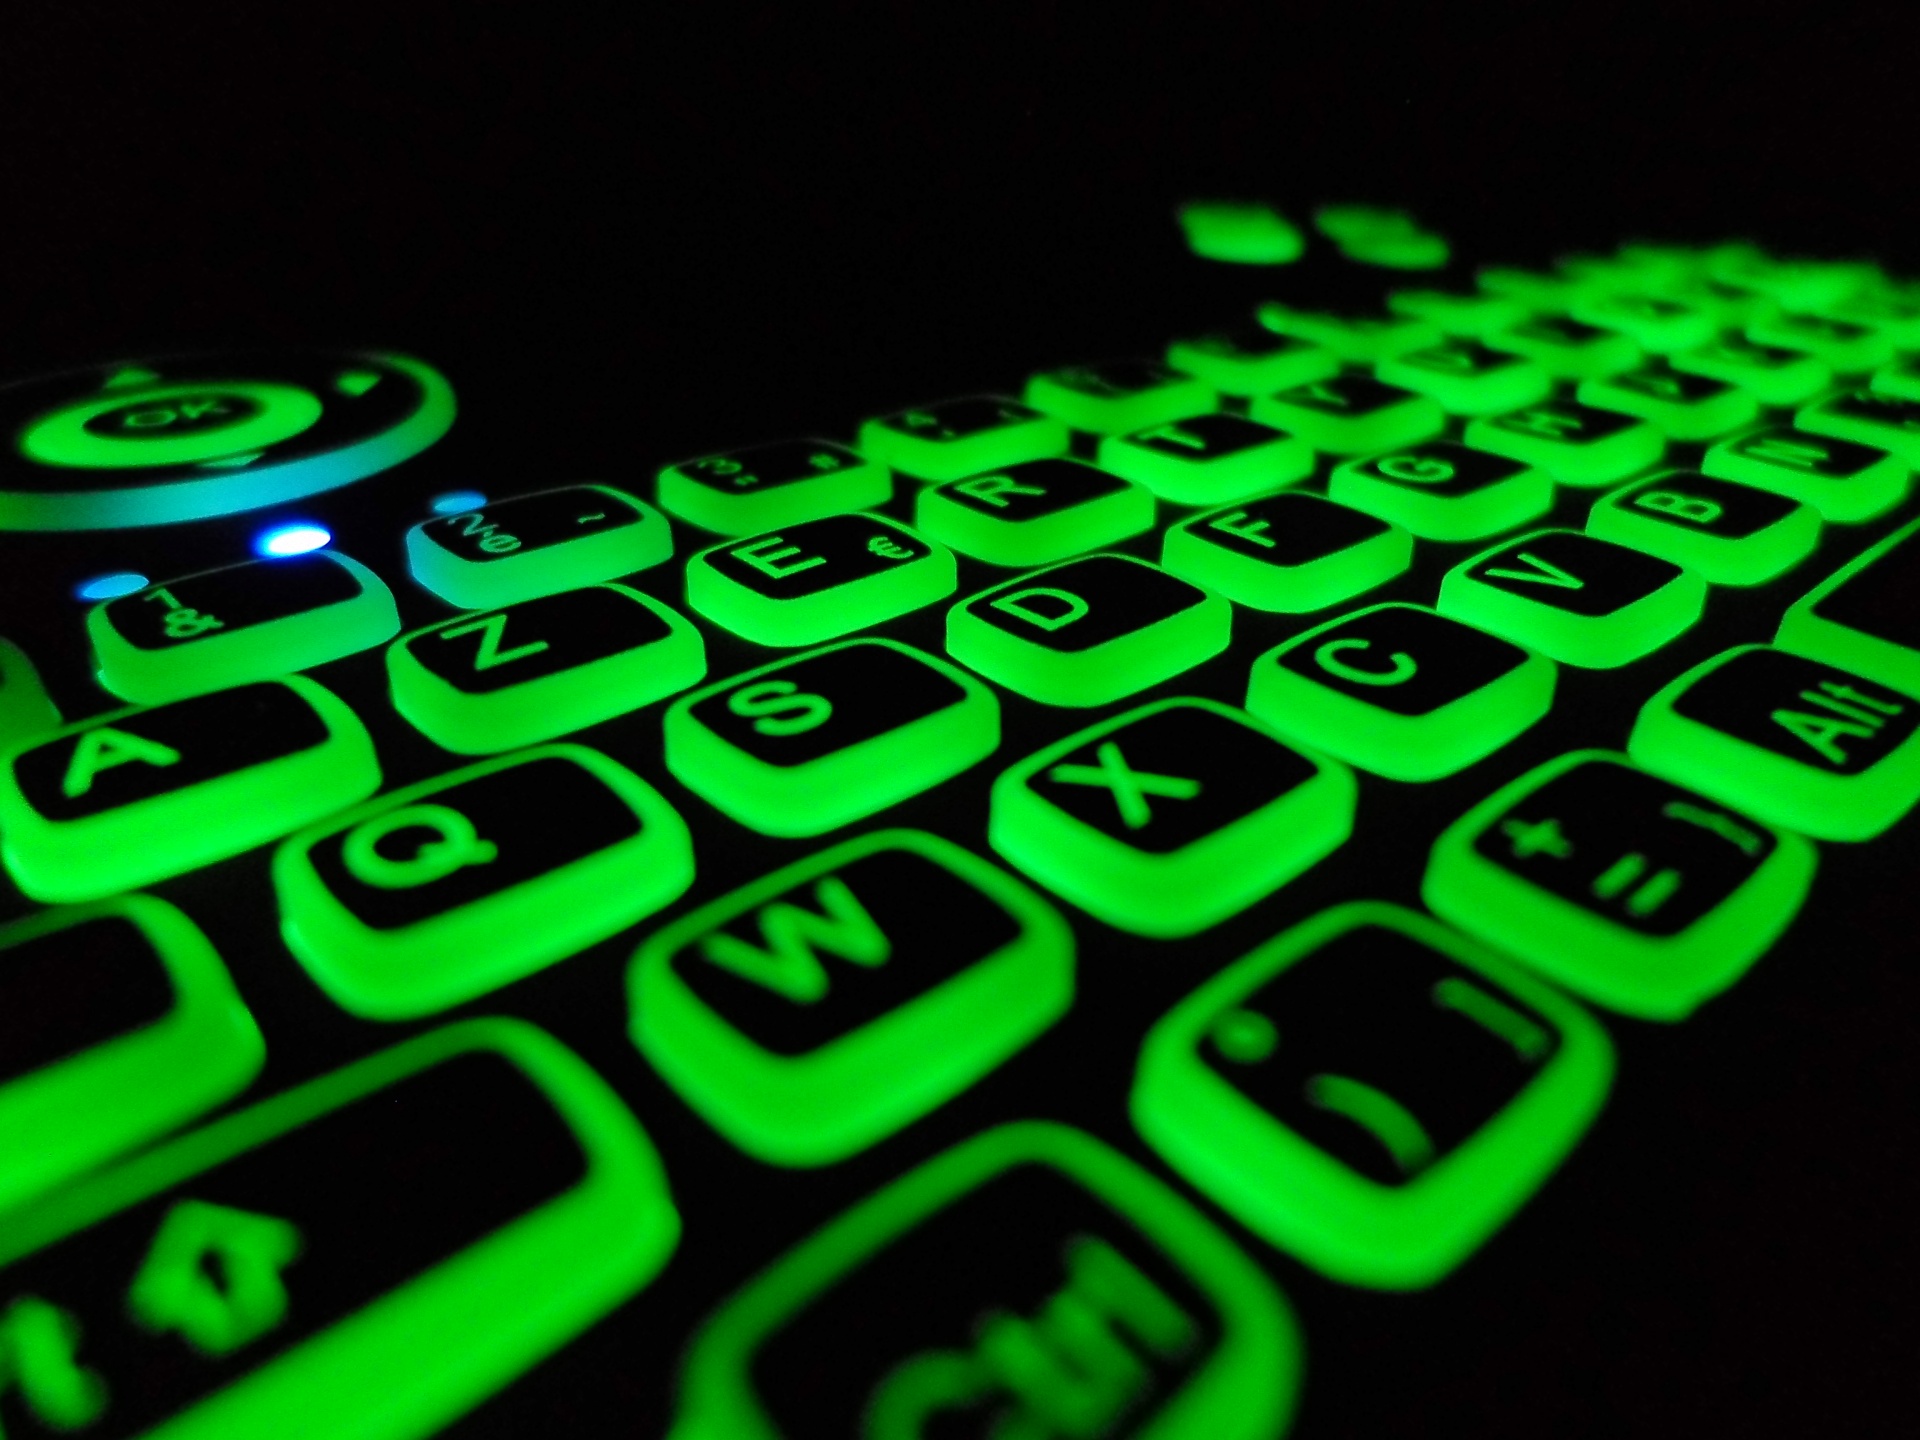 Luz de fundo verde do teclado azerty